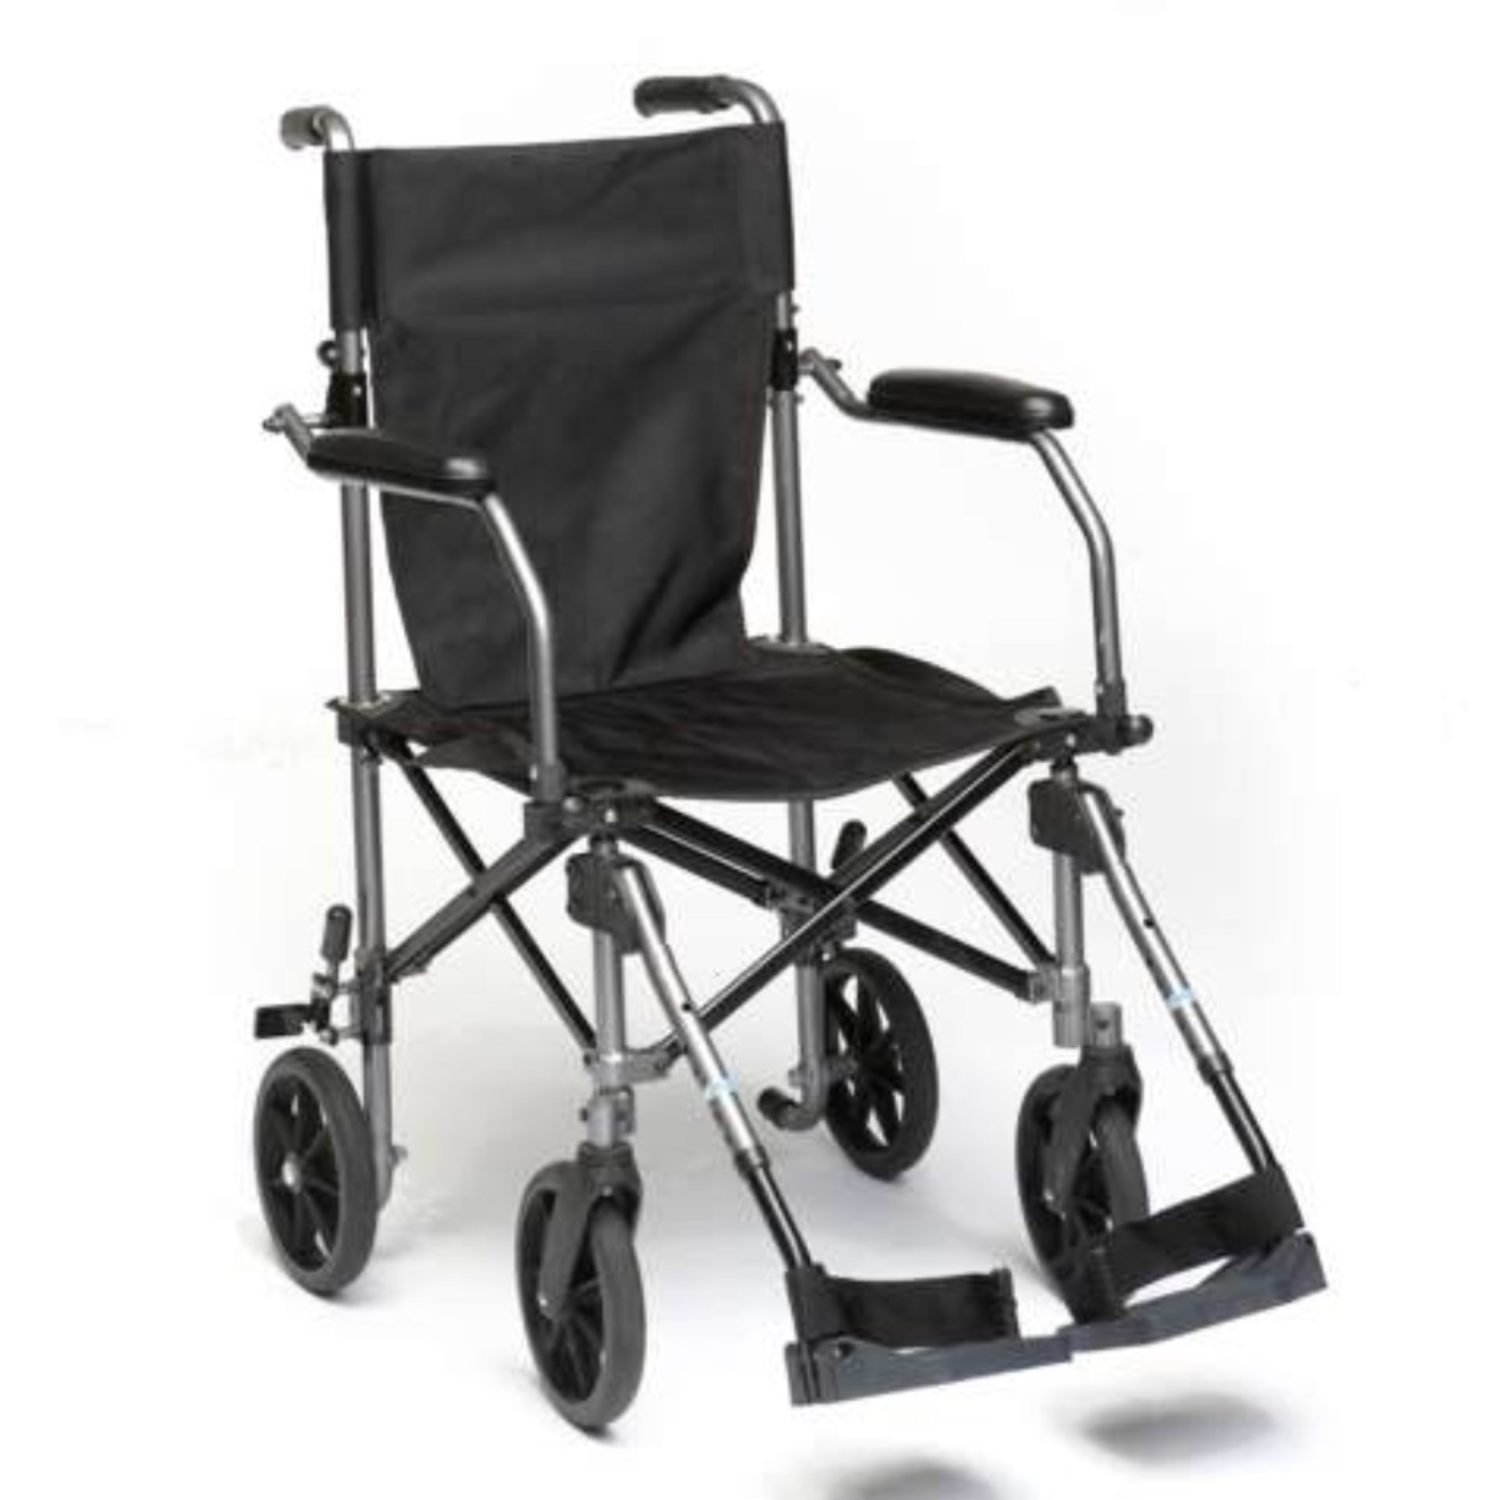 Folding Lightweight Wheelchair